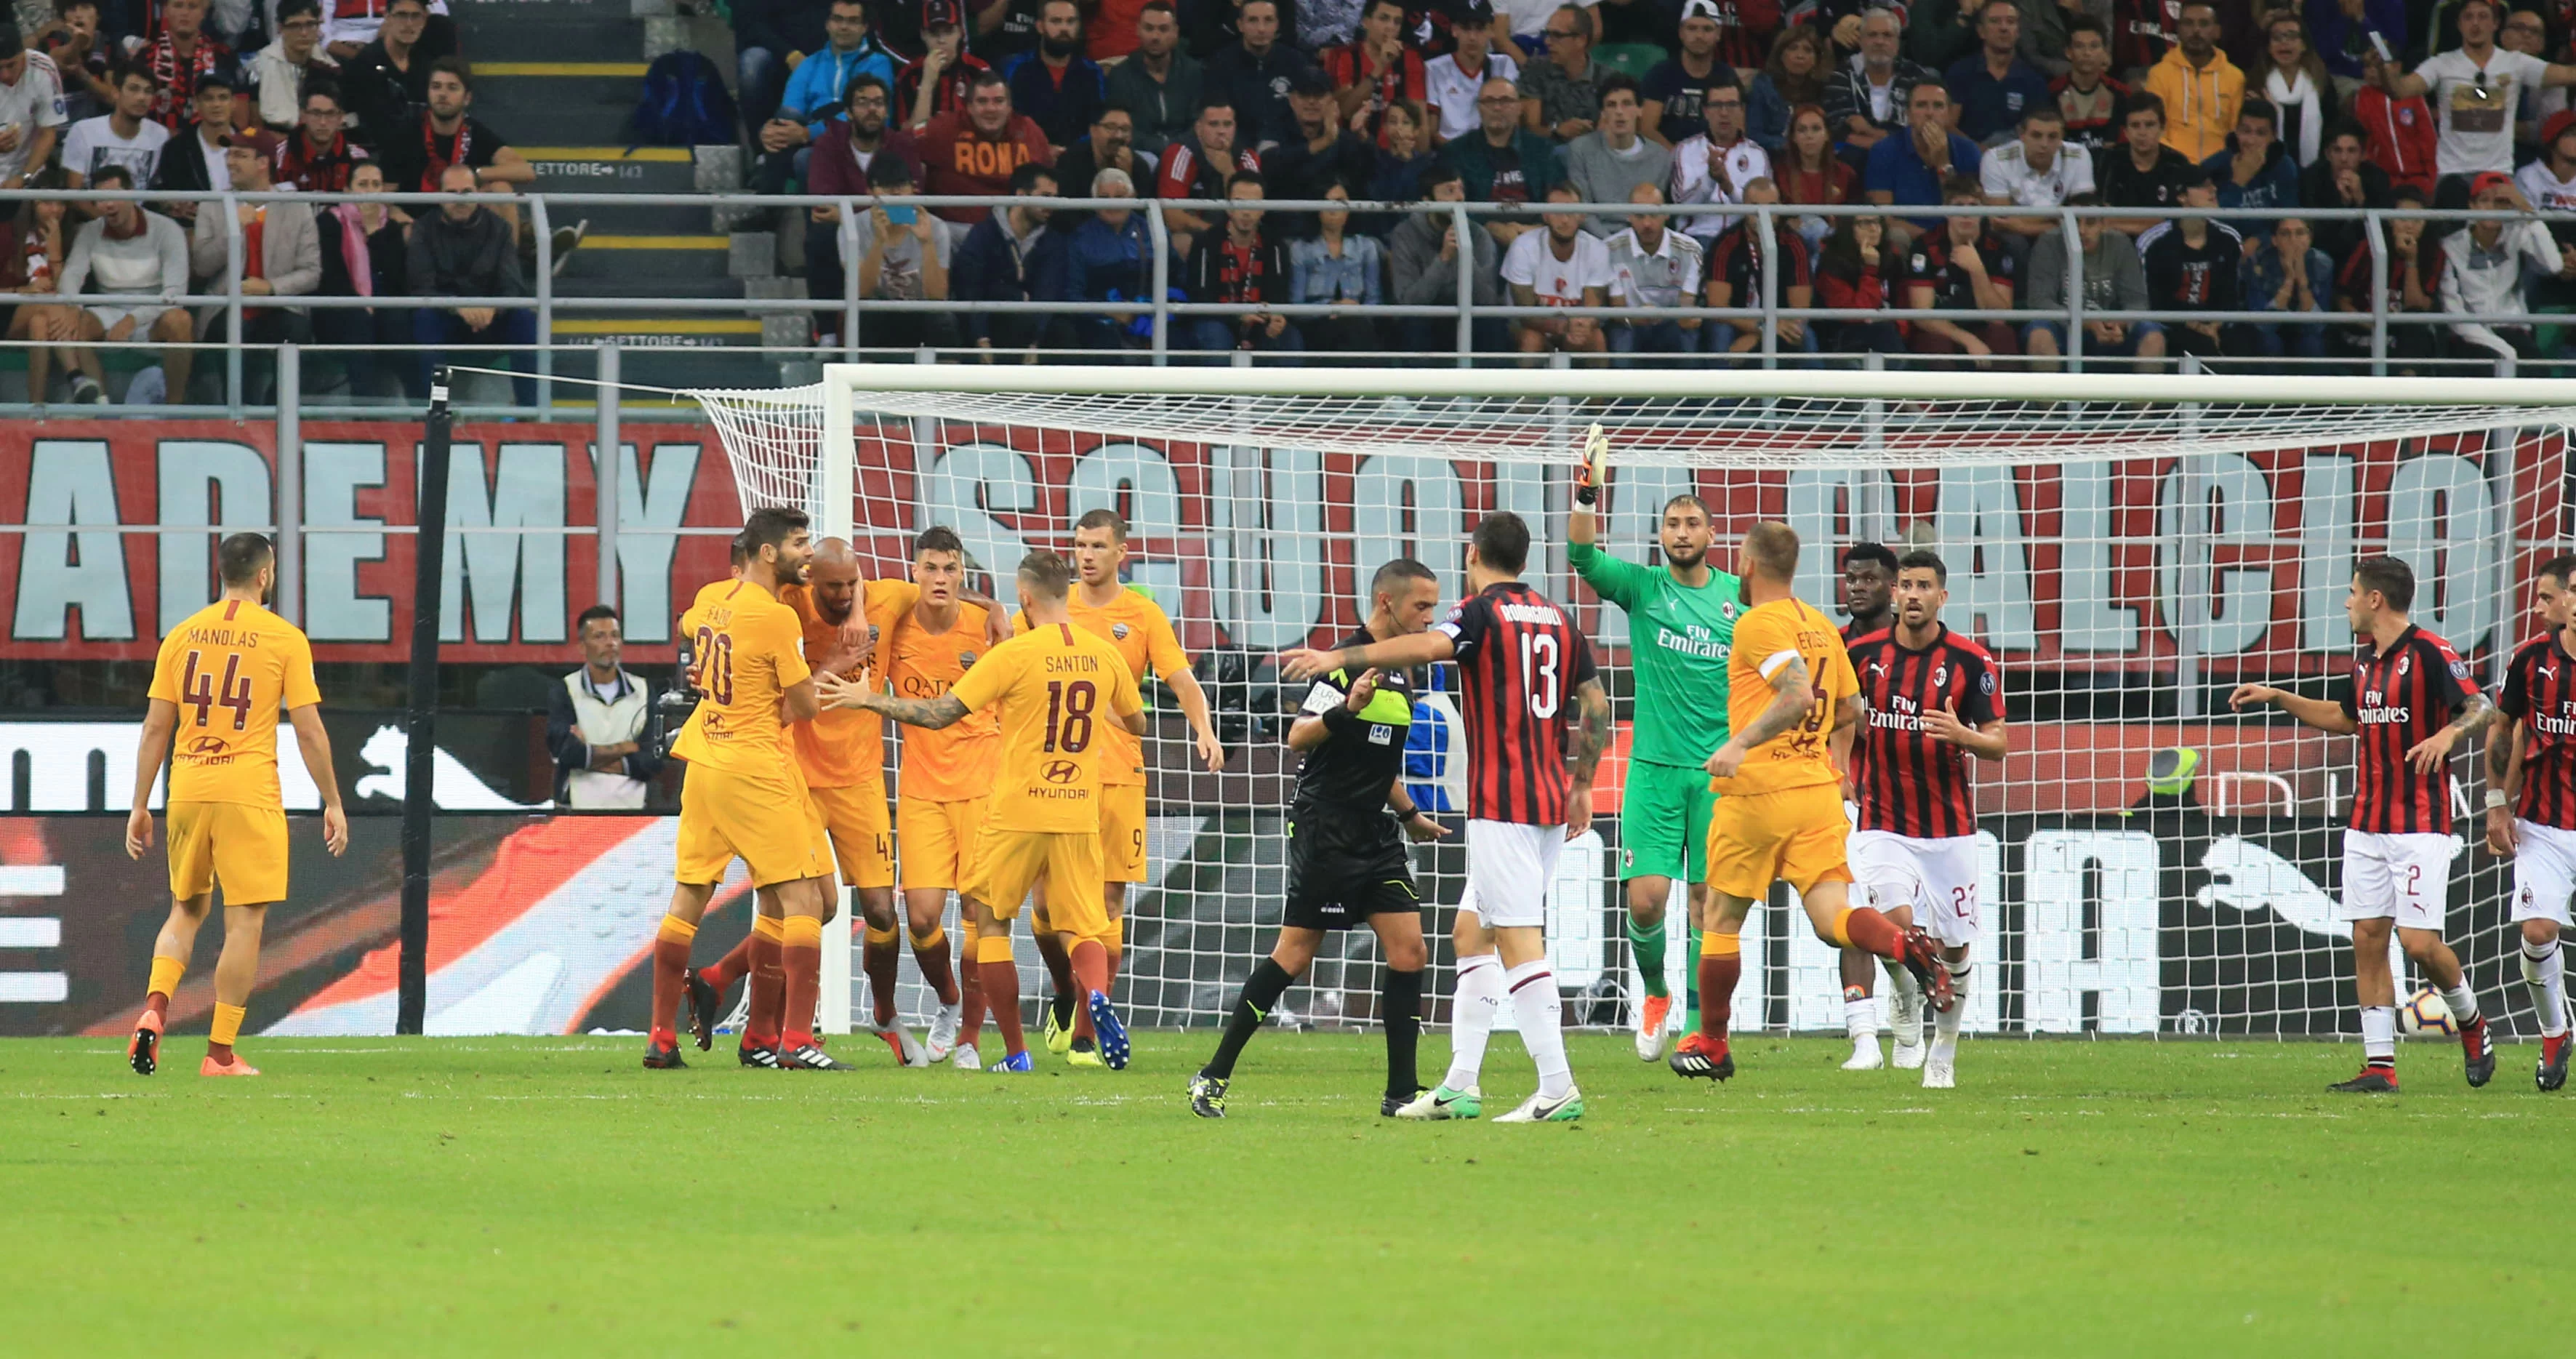 L’OdG contro Milan e Roma: “Nonostante la proprietà straniera, l’italiano dovrebbero comprenderlo”